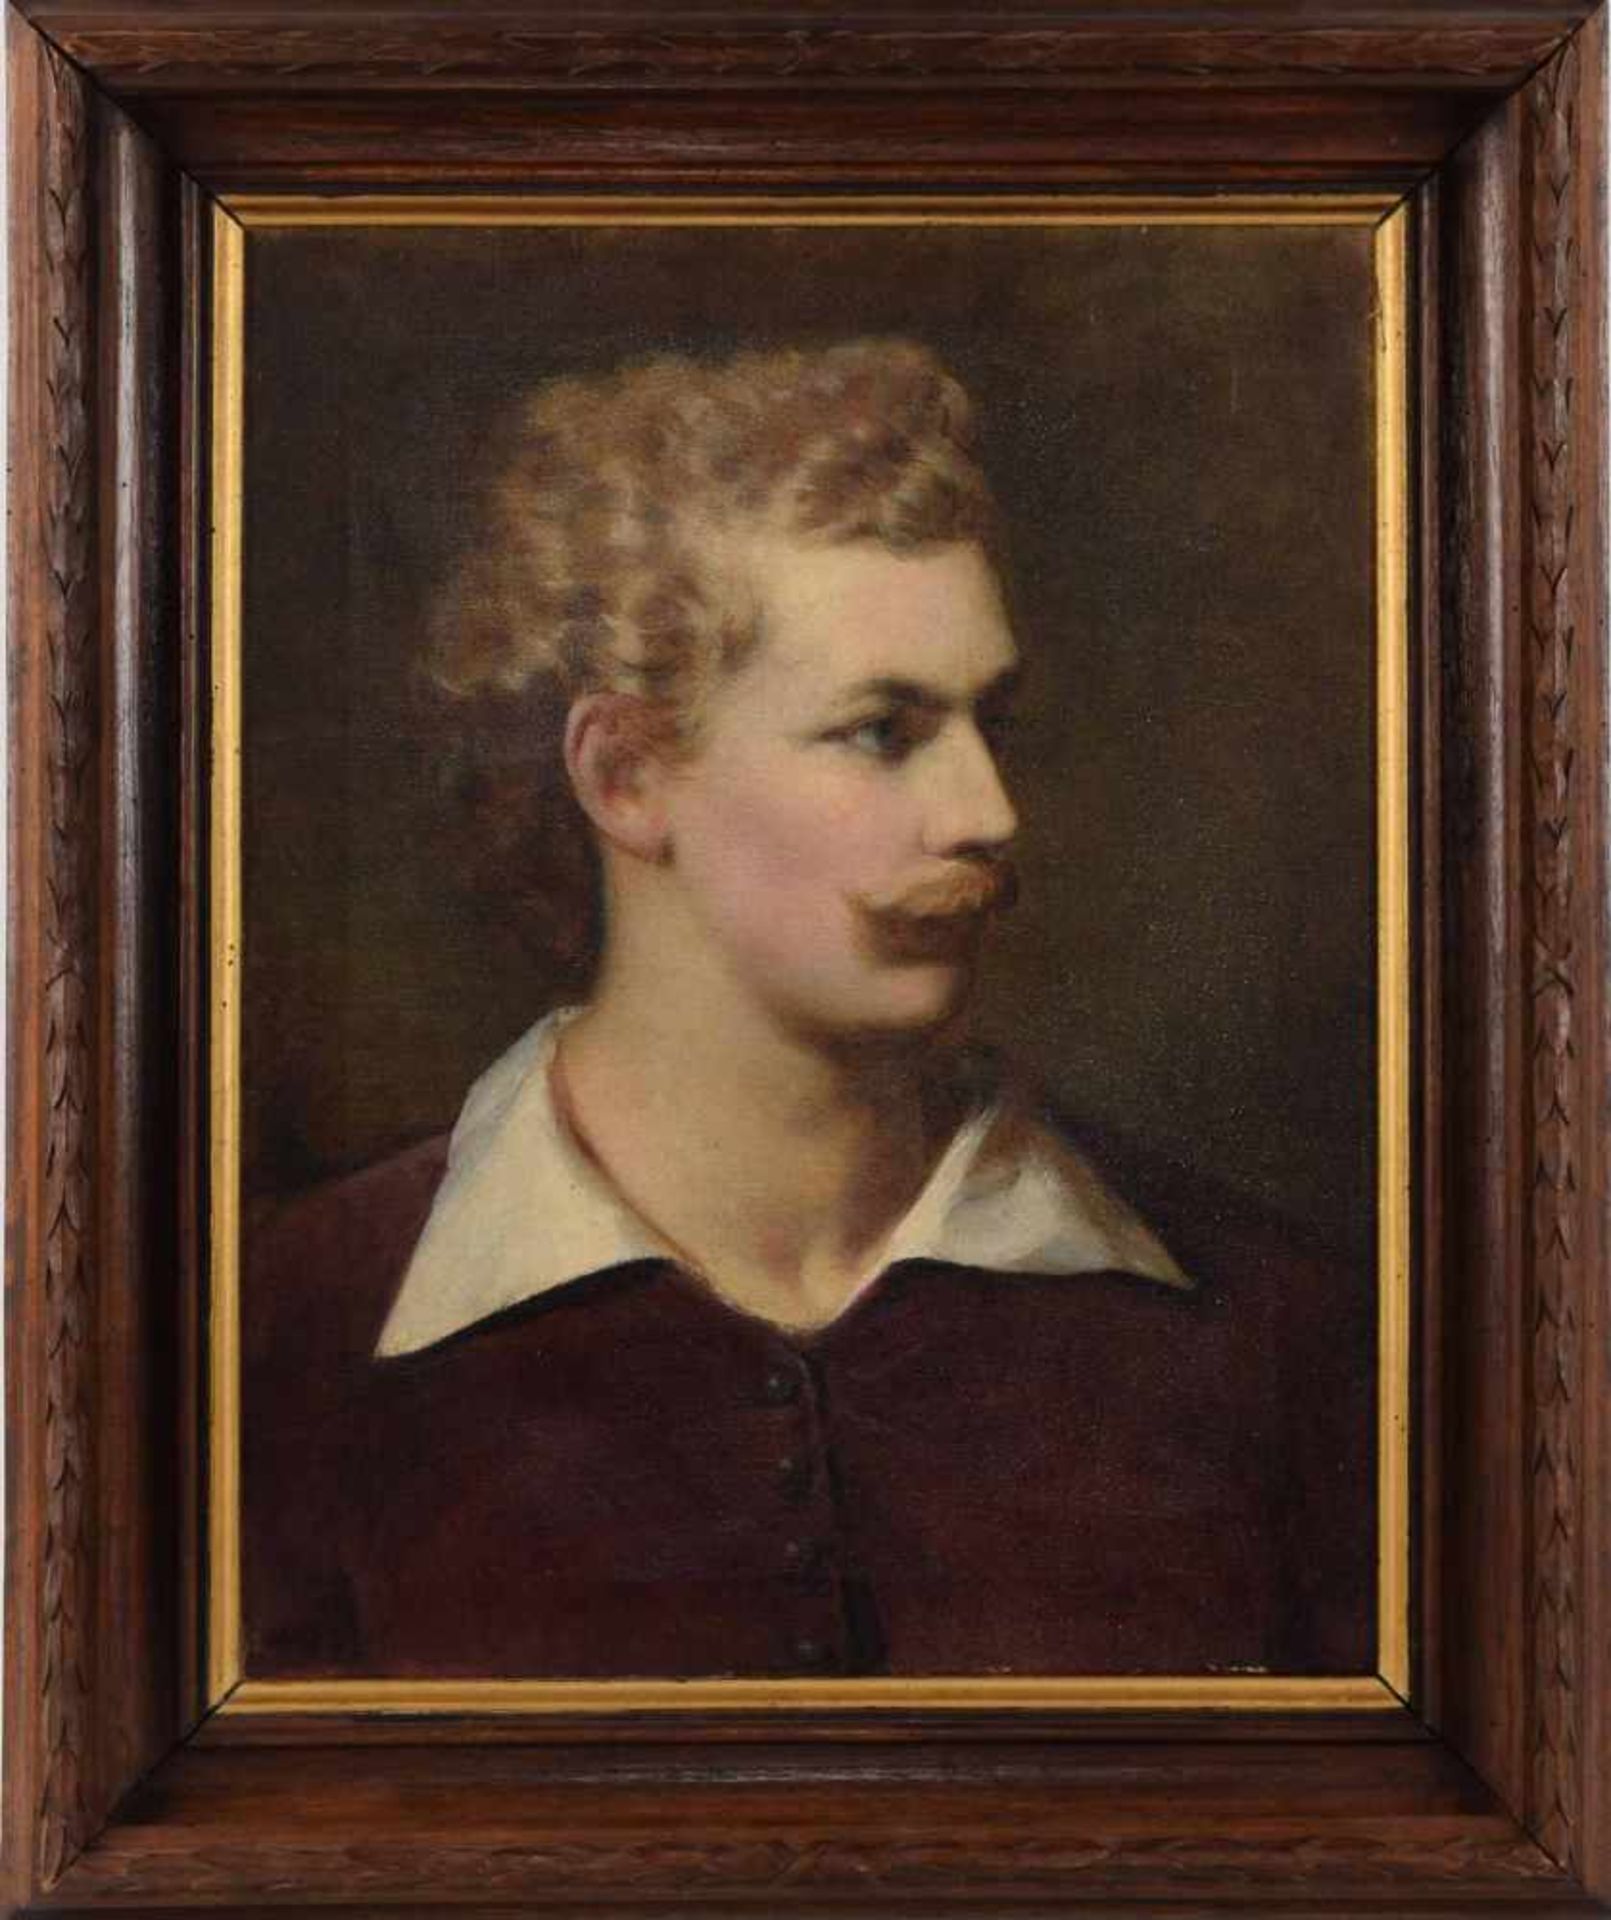 Unbekannter Porträtist Öl/Lwd., Brustporträt, wohl Darstellung des Malers Anselm Feuerbach nach - Bild 3 aus 3